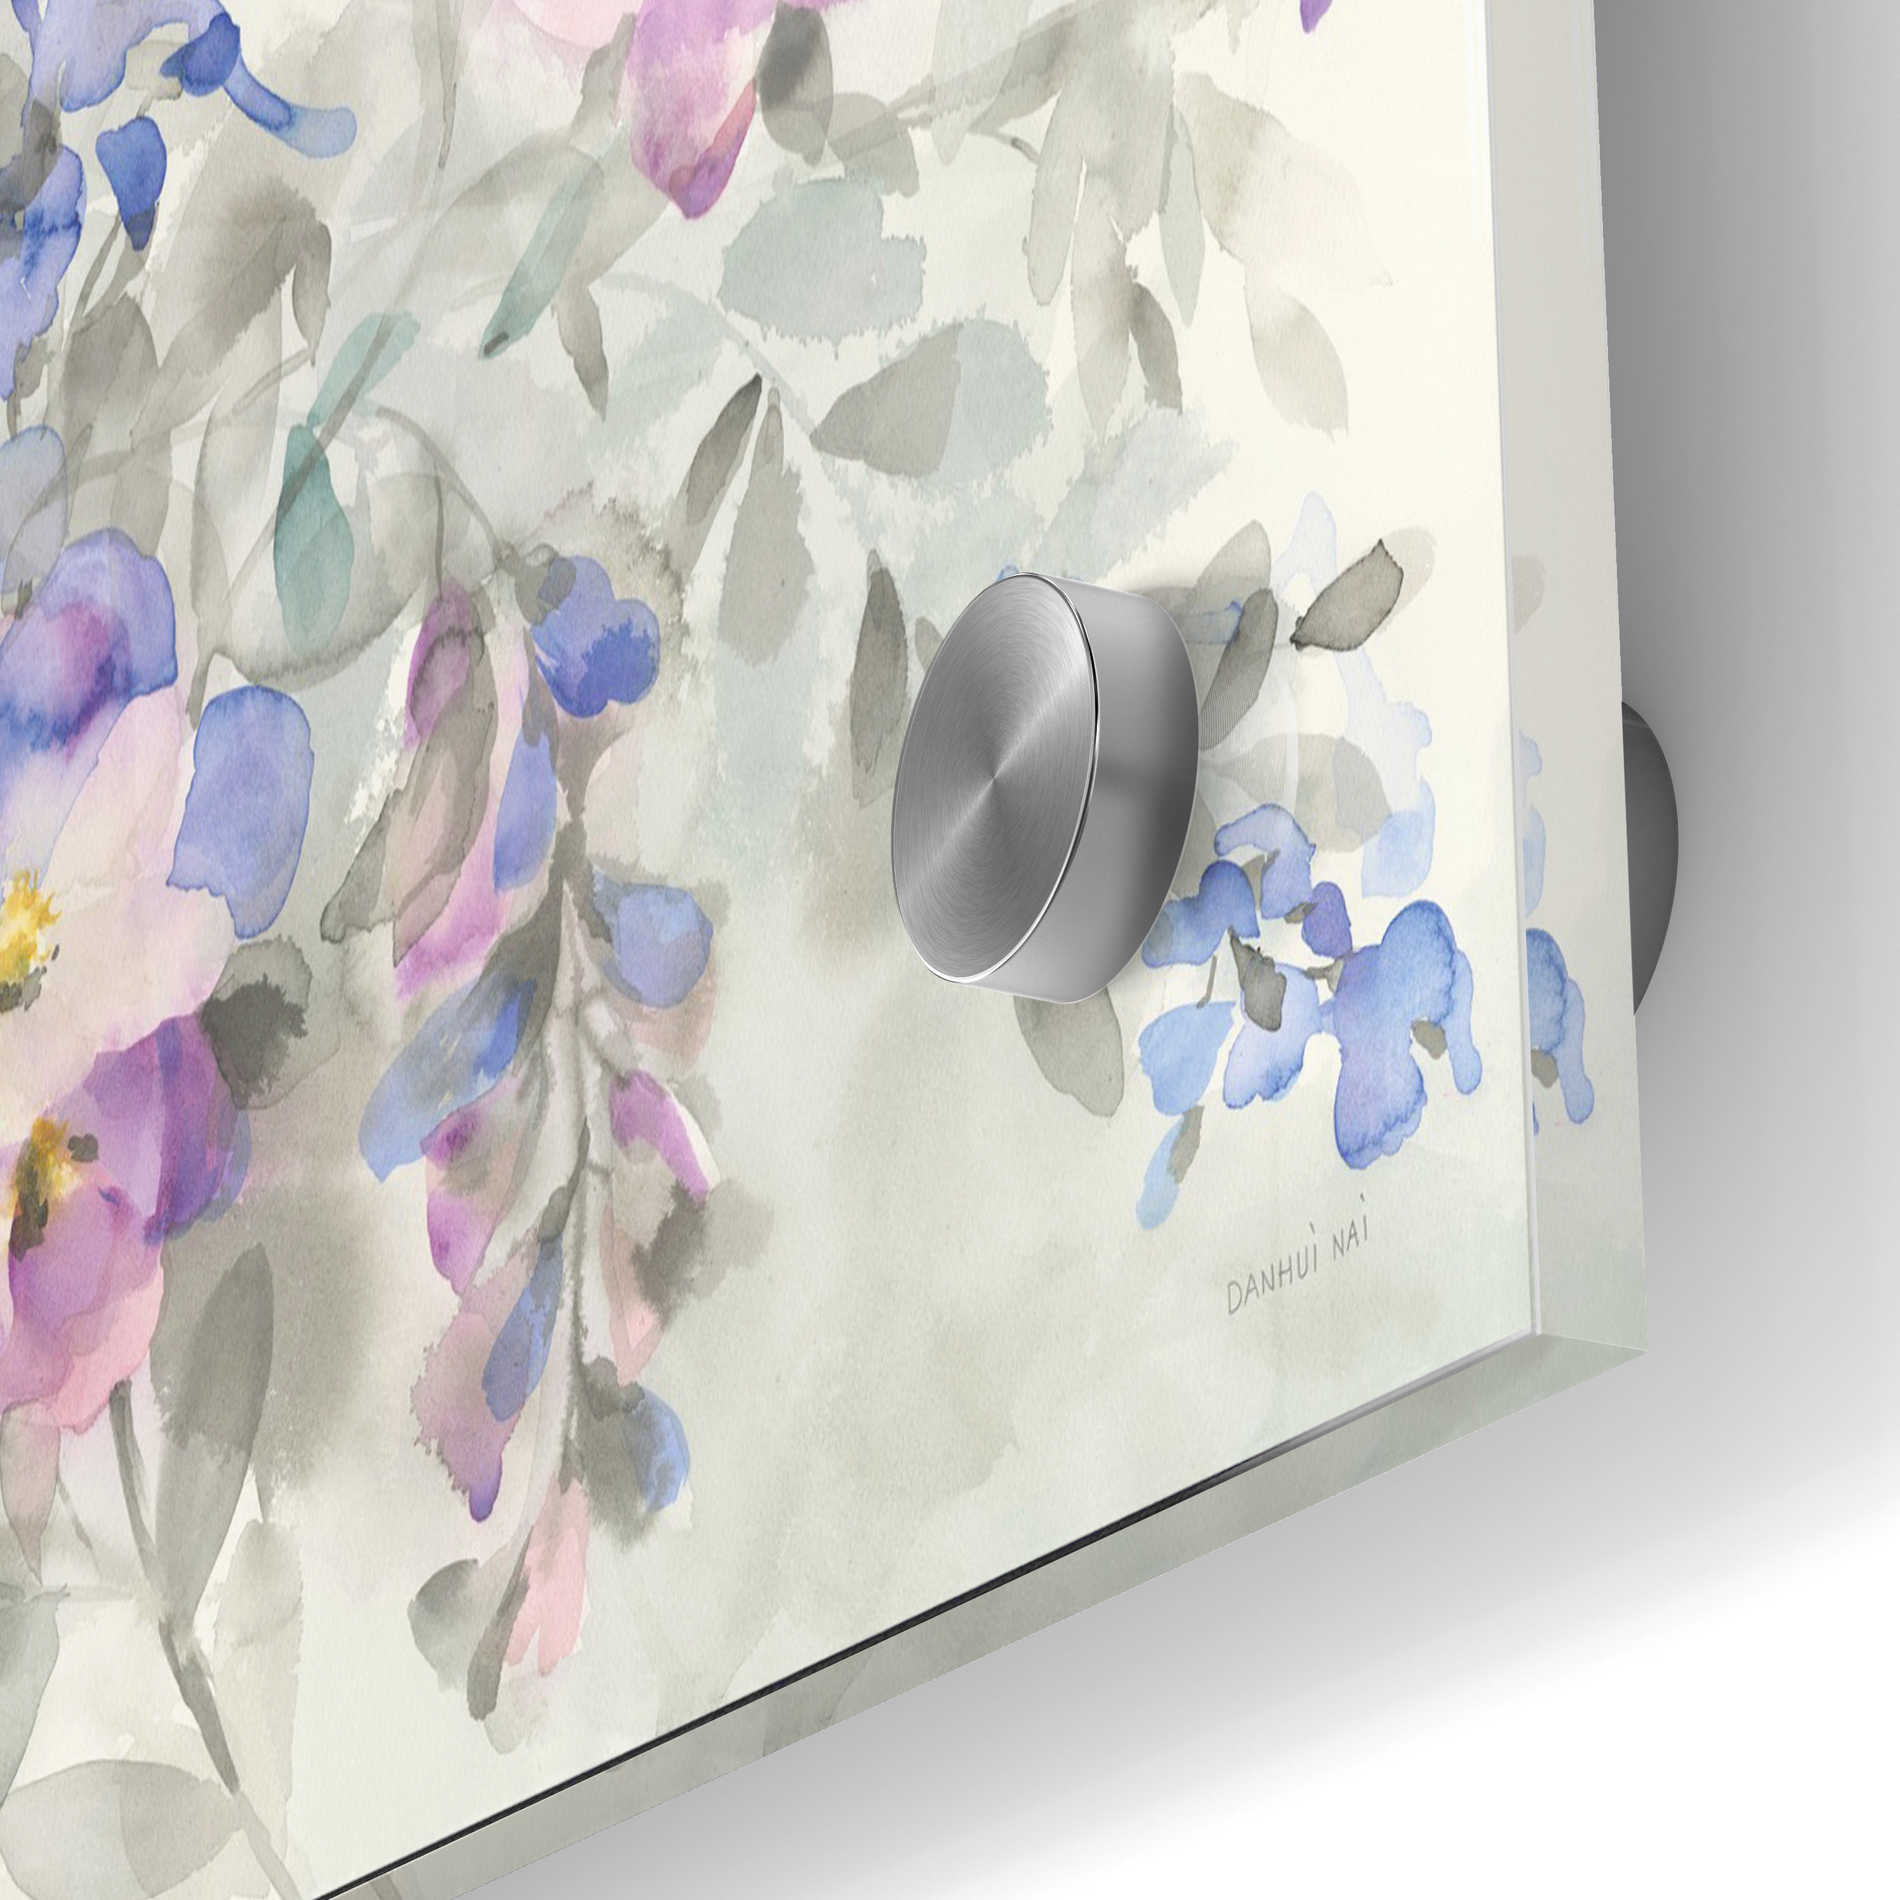 Epic Art 'Garden Dreams' by Danhui Nai, Acrylic Glass Wall Art,24x36